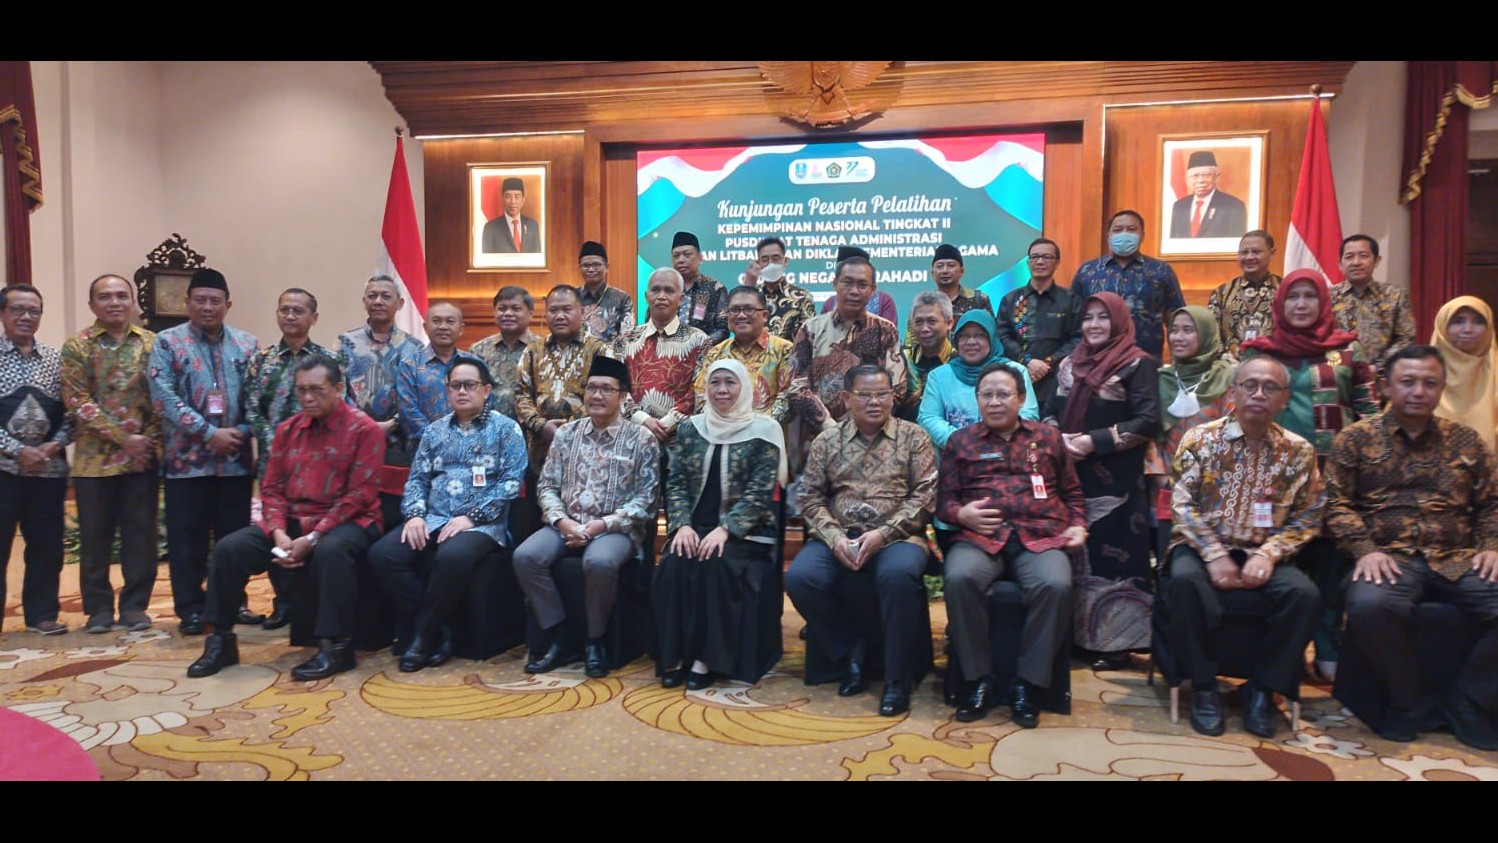 Kunjungan Peserta Pelatihan Kepemimpinan Nasional Tingkat II ke Pemprov Jawa Timur